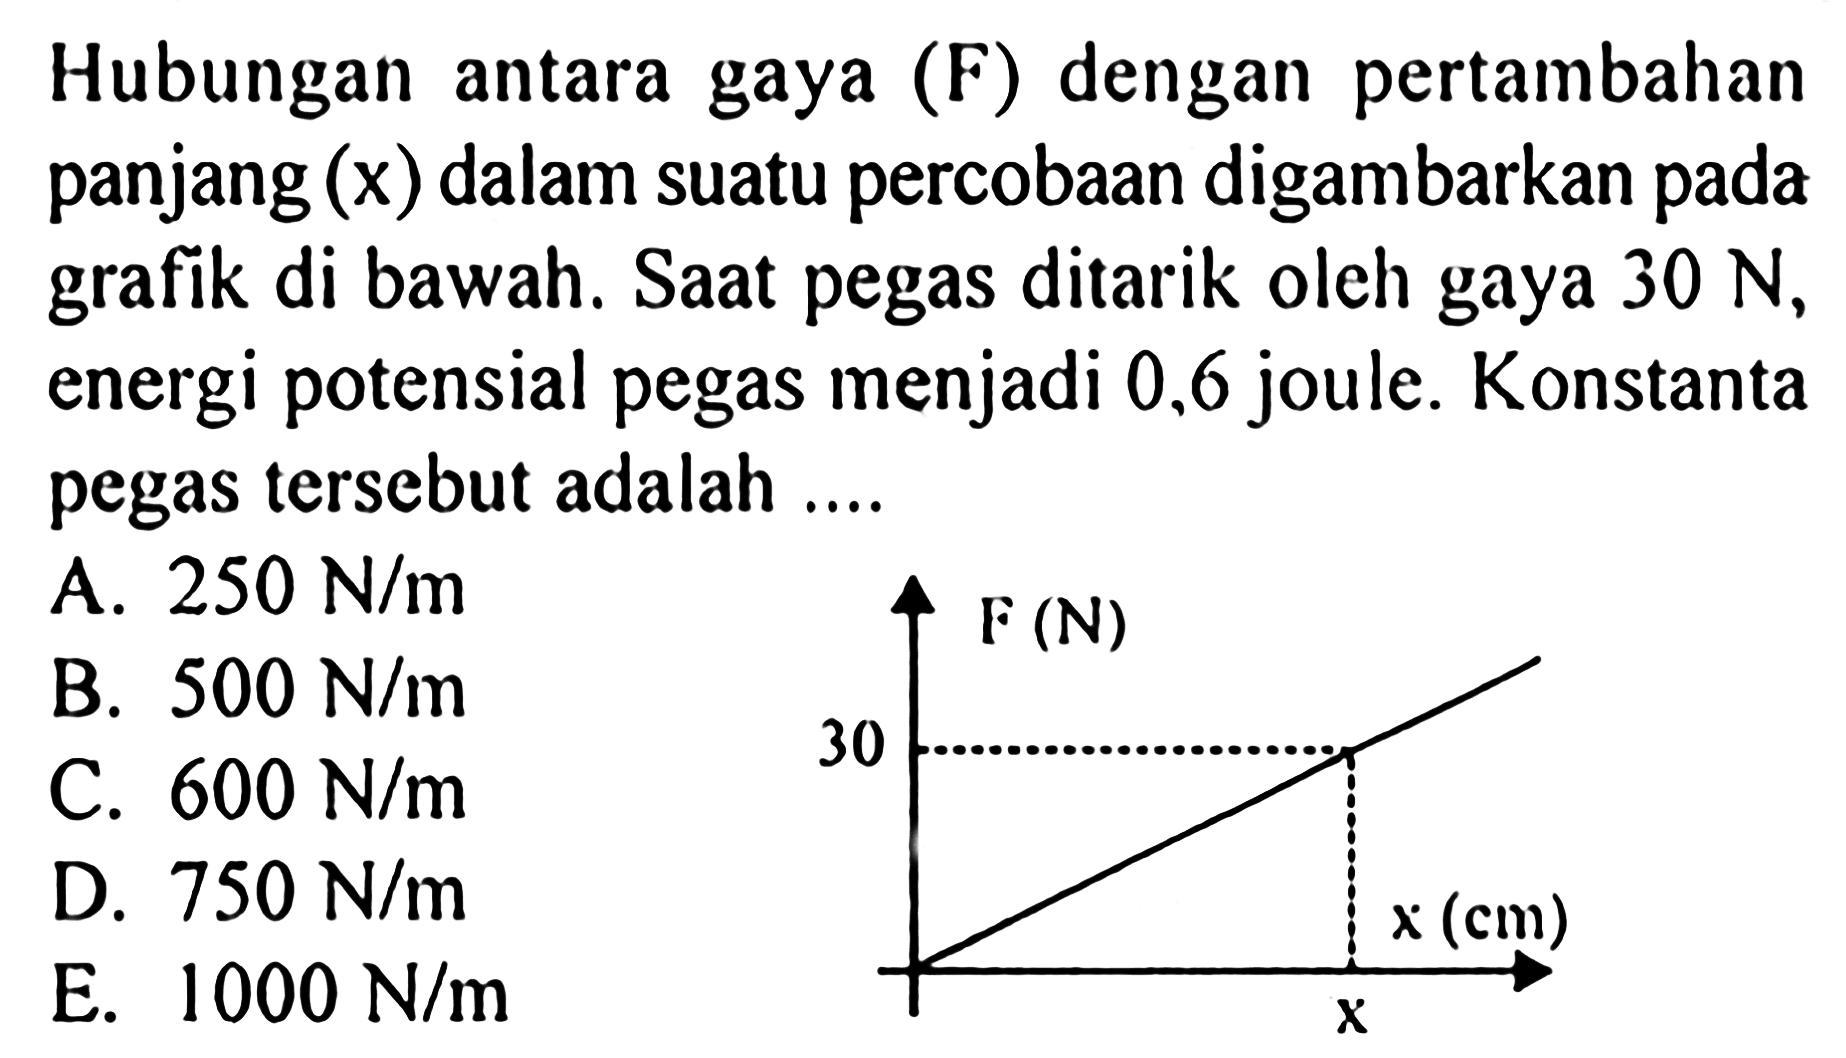 Hubungan antara gaya (F) dengan pertambahan panjang  (x)  dalam suatu percobaan digambarkan pada grafik di bawah. Saat pegas ditarik oleh gaya  30 N , energi potensial pegas menjadi 0,6 joule. Konstanta pegas tersebut adalah ....  F(N) 30 x (cm) x